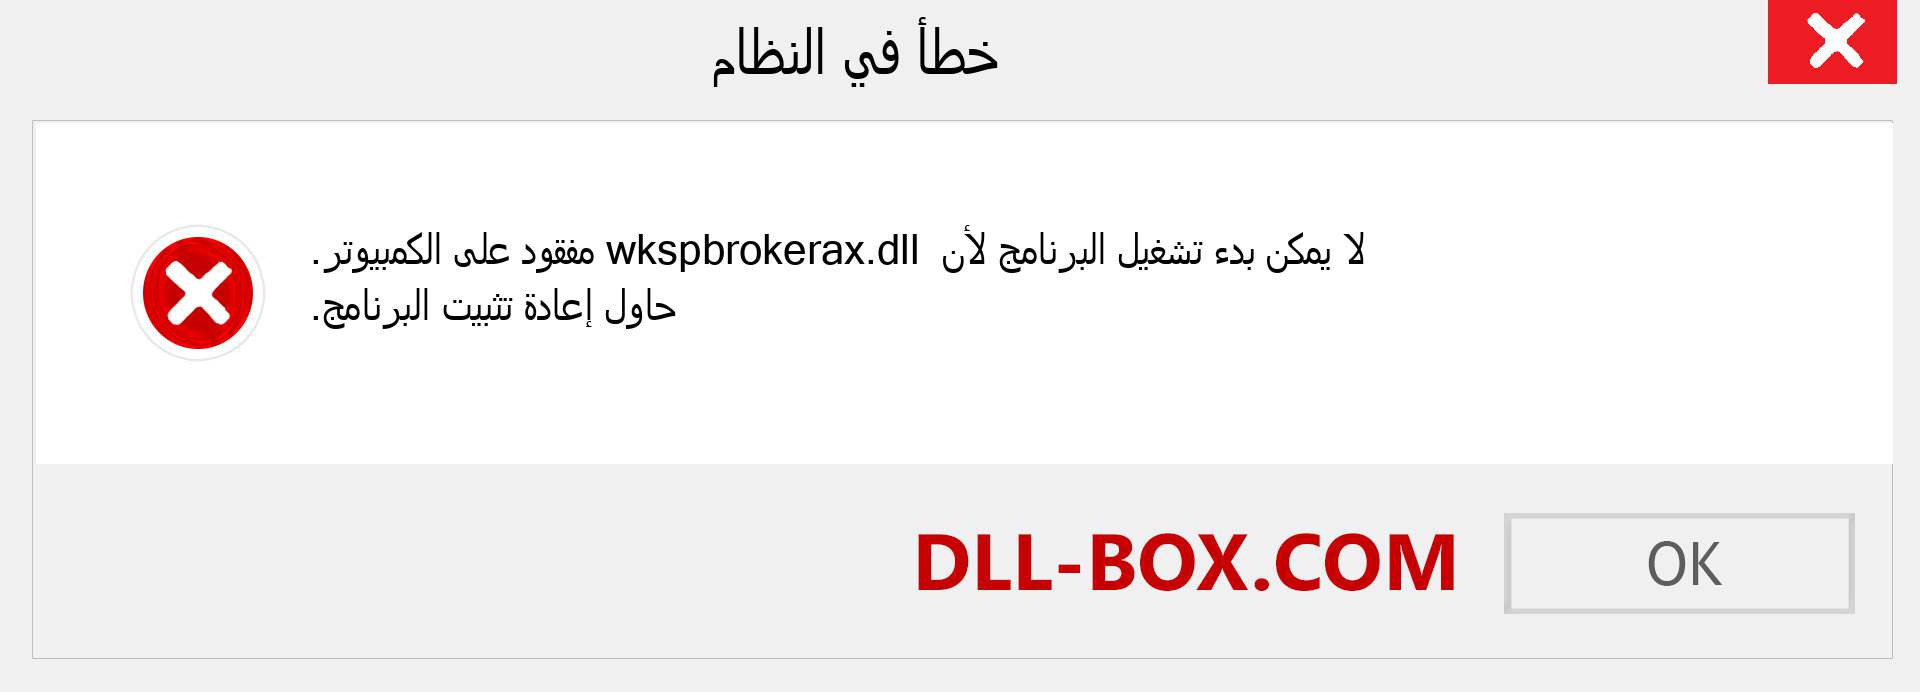 ملف wkspbrokerax.dll مفقود ؟. التنزيل لنظام التشغيل Windows 7 و 8 و 10 - إصلاح خطأ wkspbrokerax dll المفقود على Windows والصور والصور